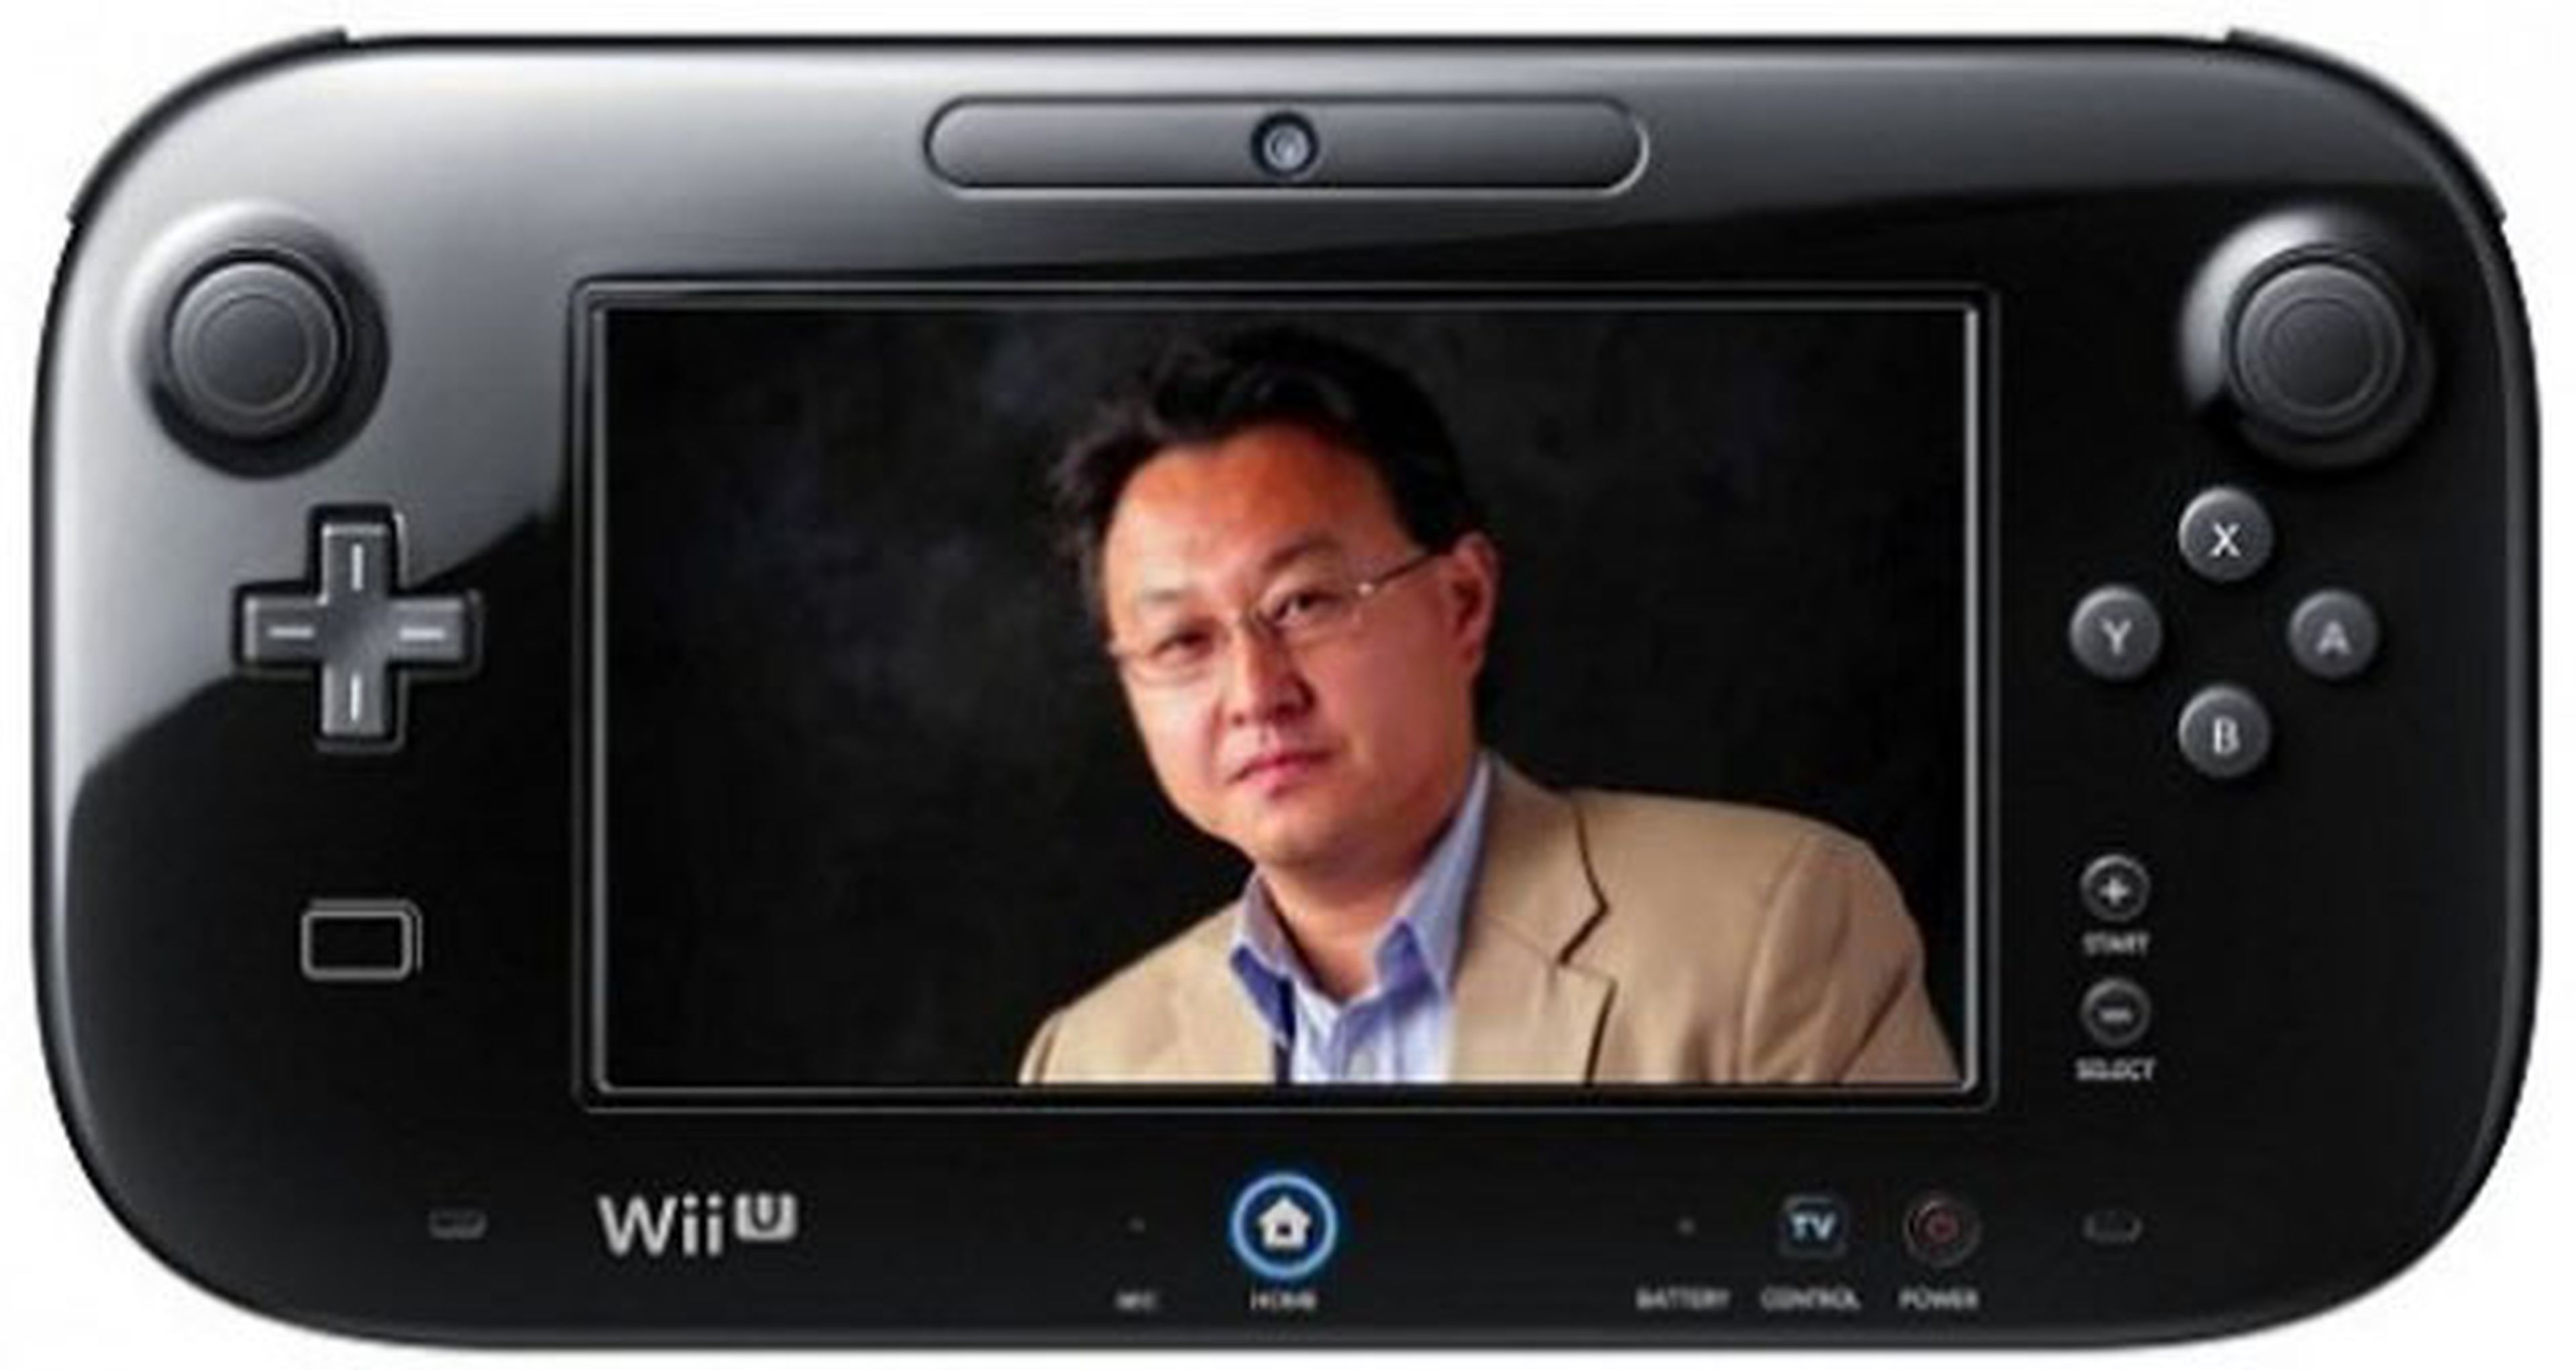 Sony negocia comprar la fábrica que produce la eDRAM de Wii U